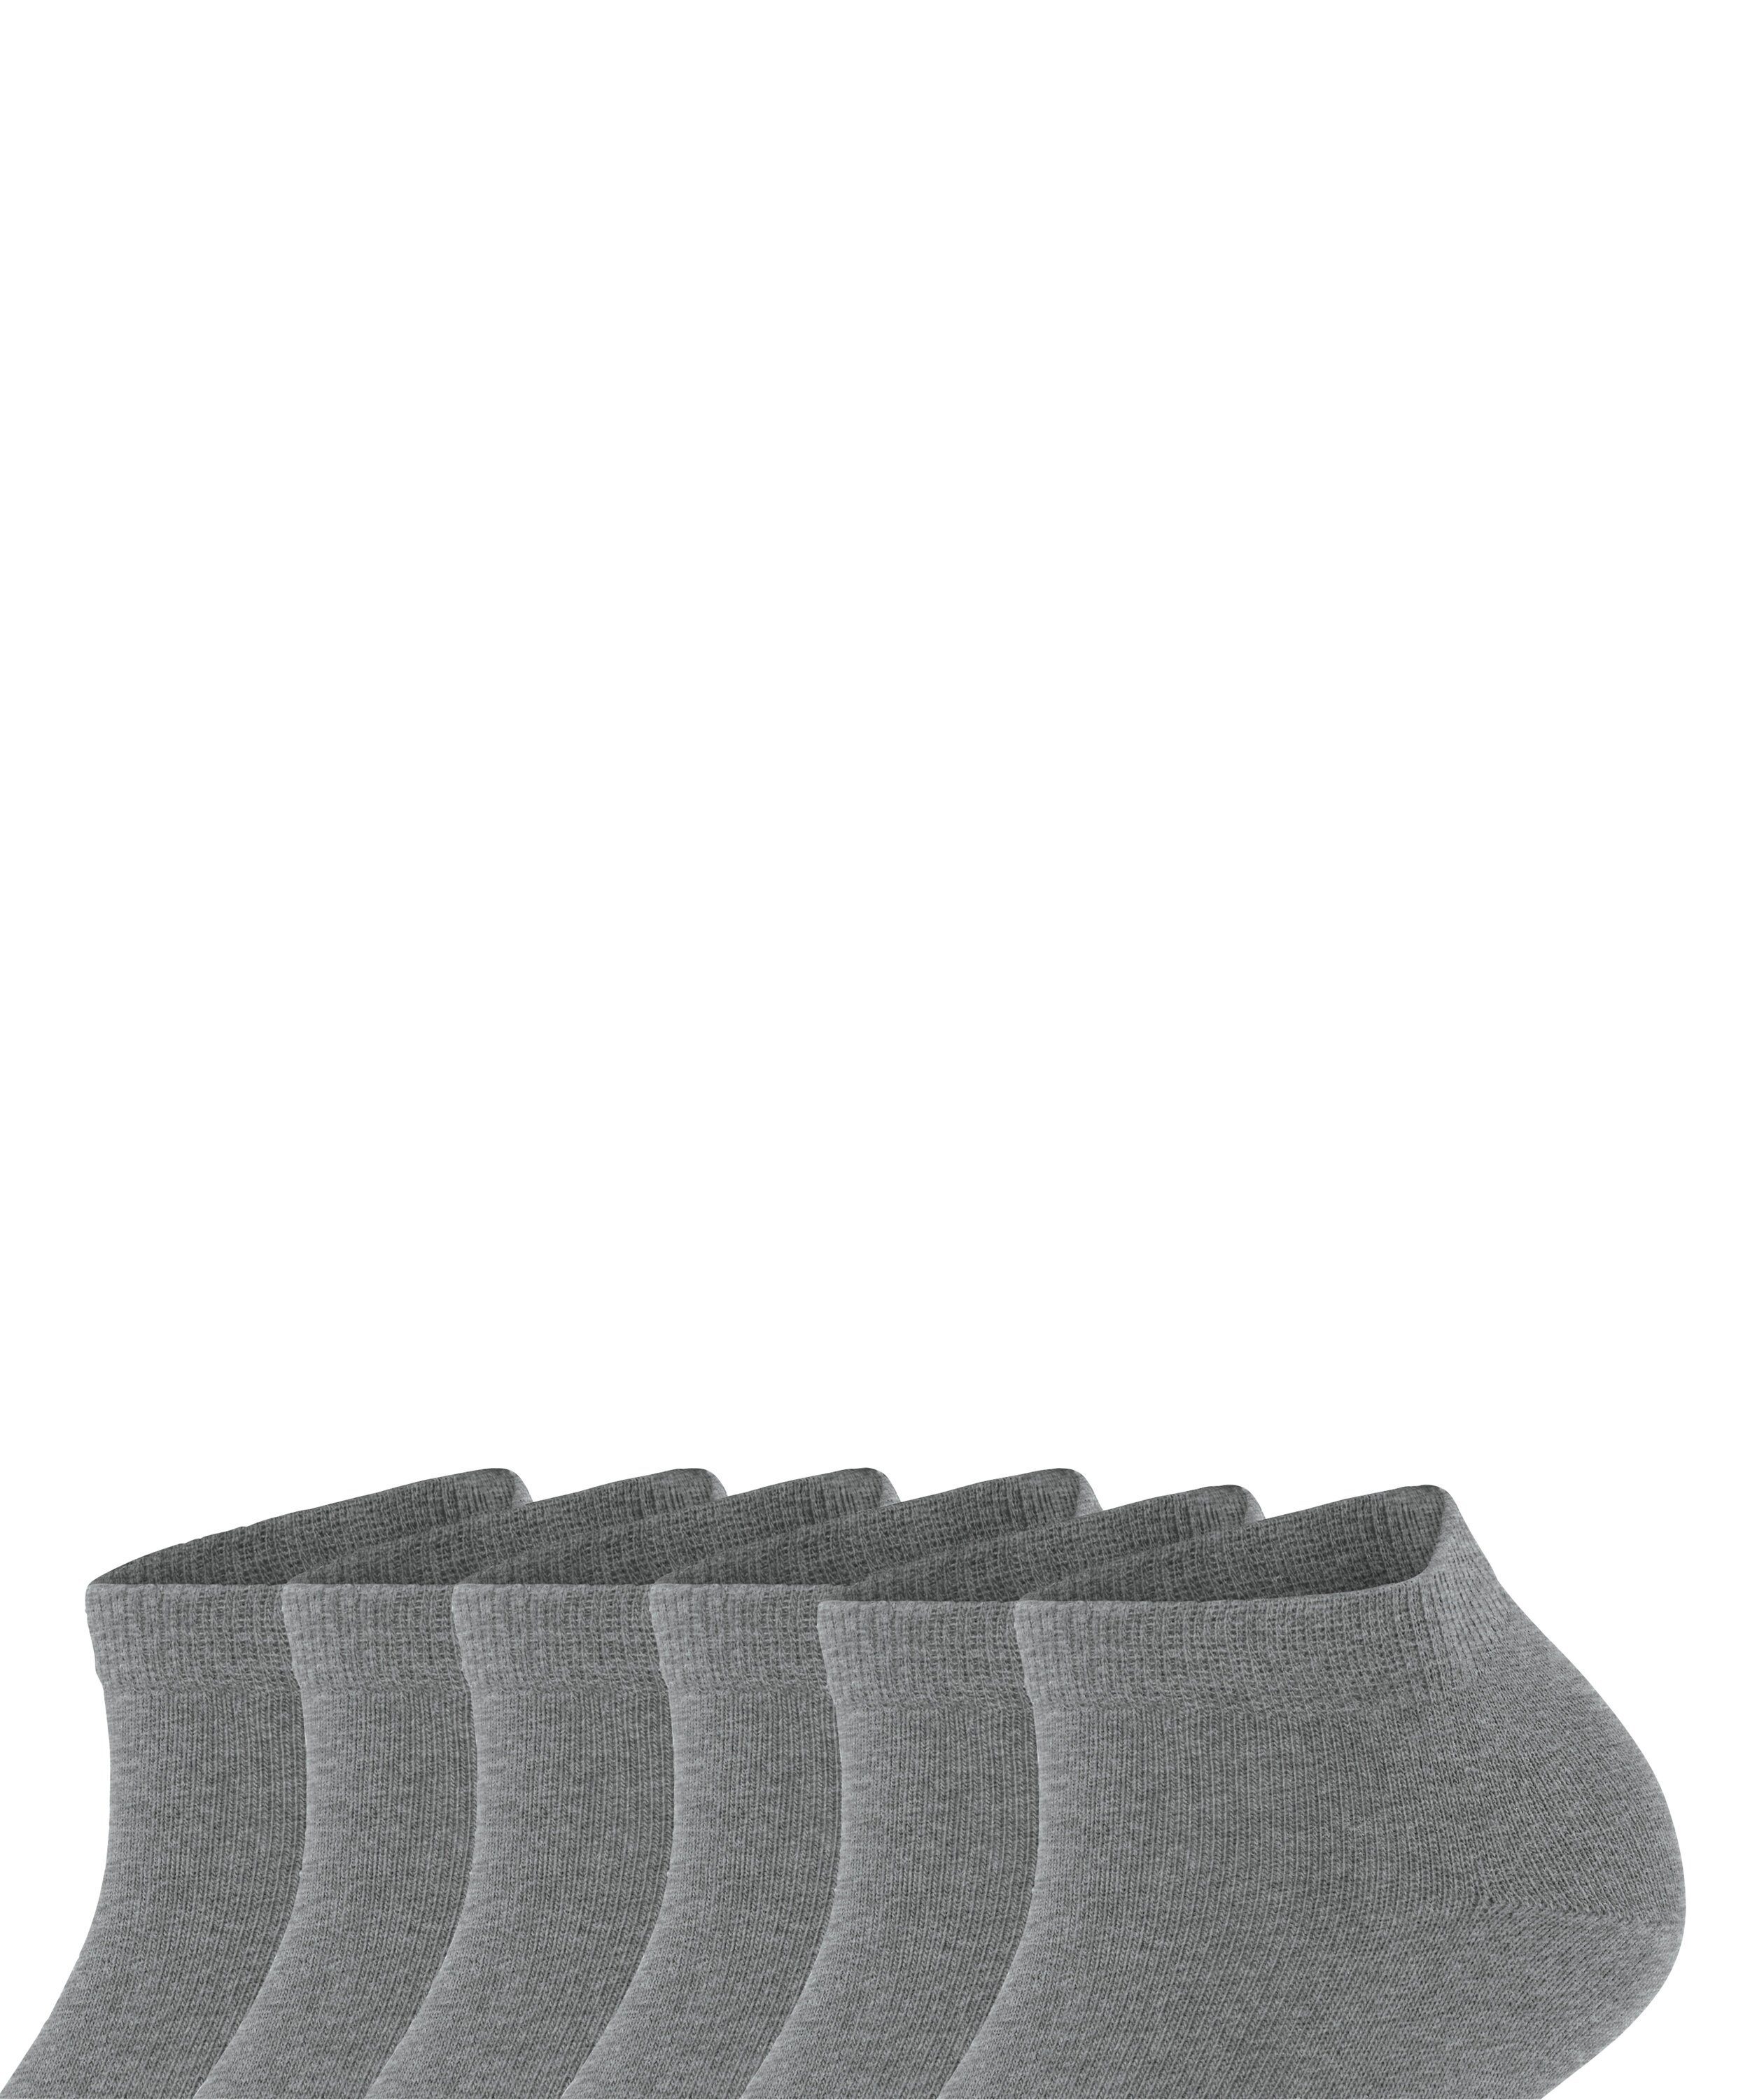 FALKE light Paar Sneakersocken Bundle (3390) aus 6 6-Pack Baumwollsneakern greymel. Set (6-Paar) Happy